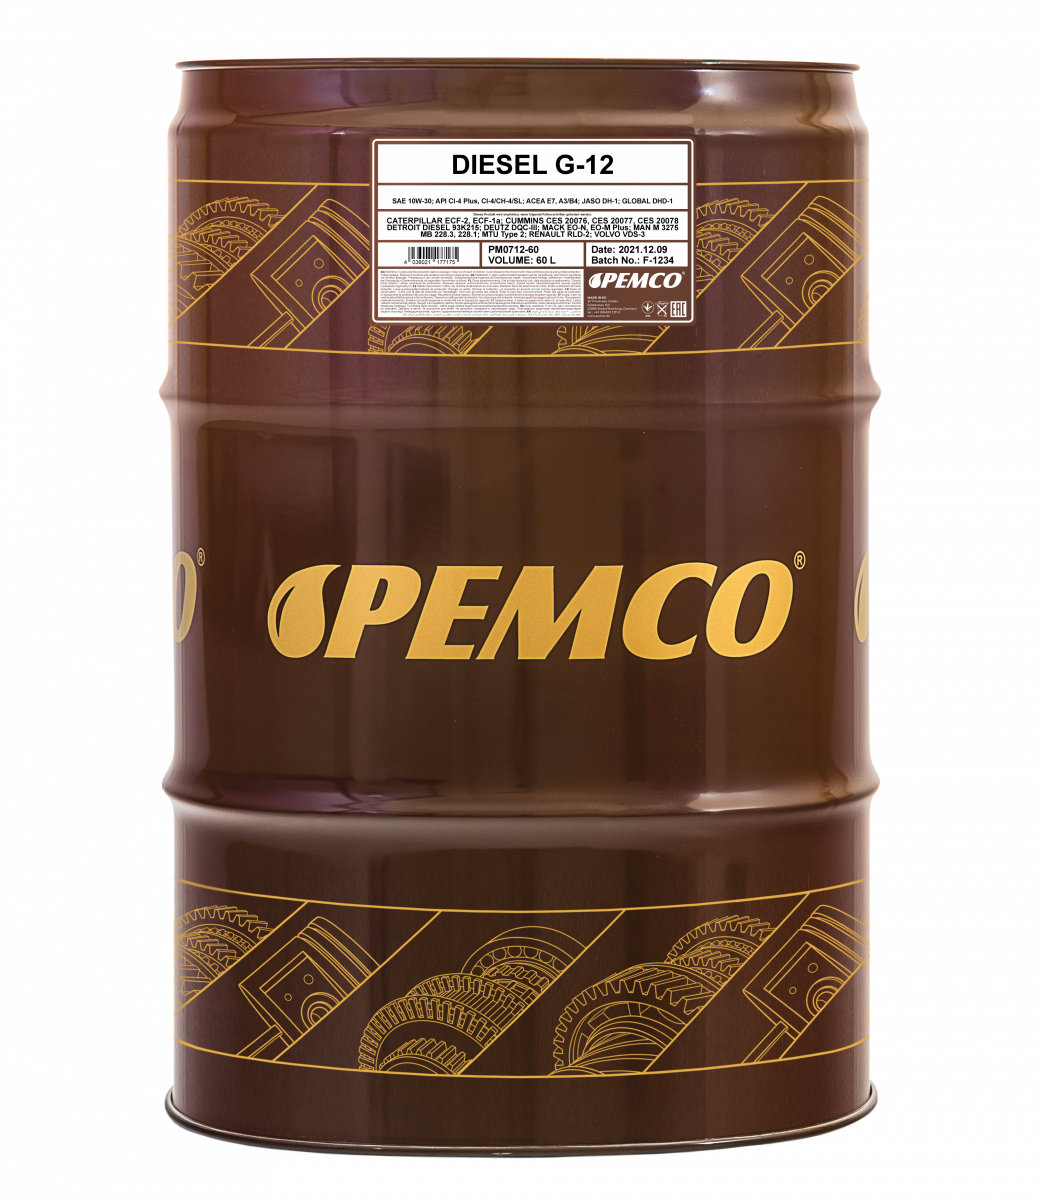 Моторное масло PEMCO DIESEL G-12 SHPD 10W-30 CI-4 Plus/CI-4/CH-4/SL полусинтетическое, 60л (PM0712-60)